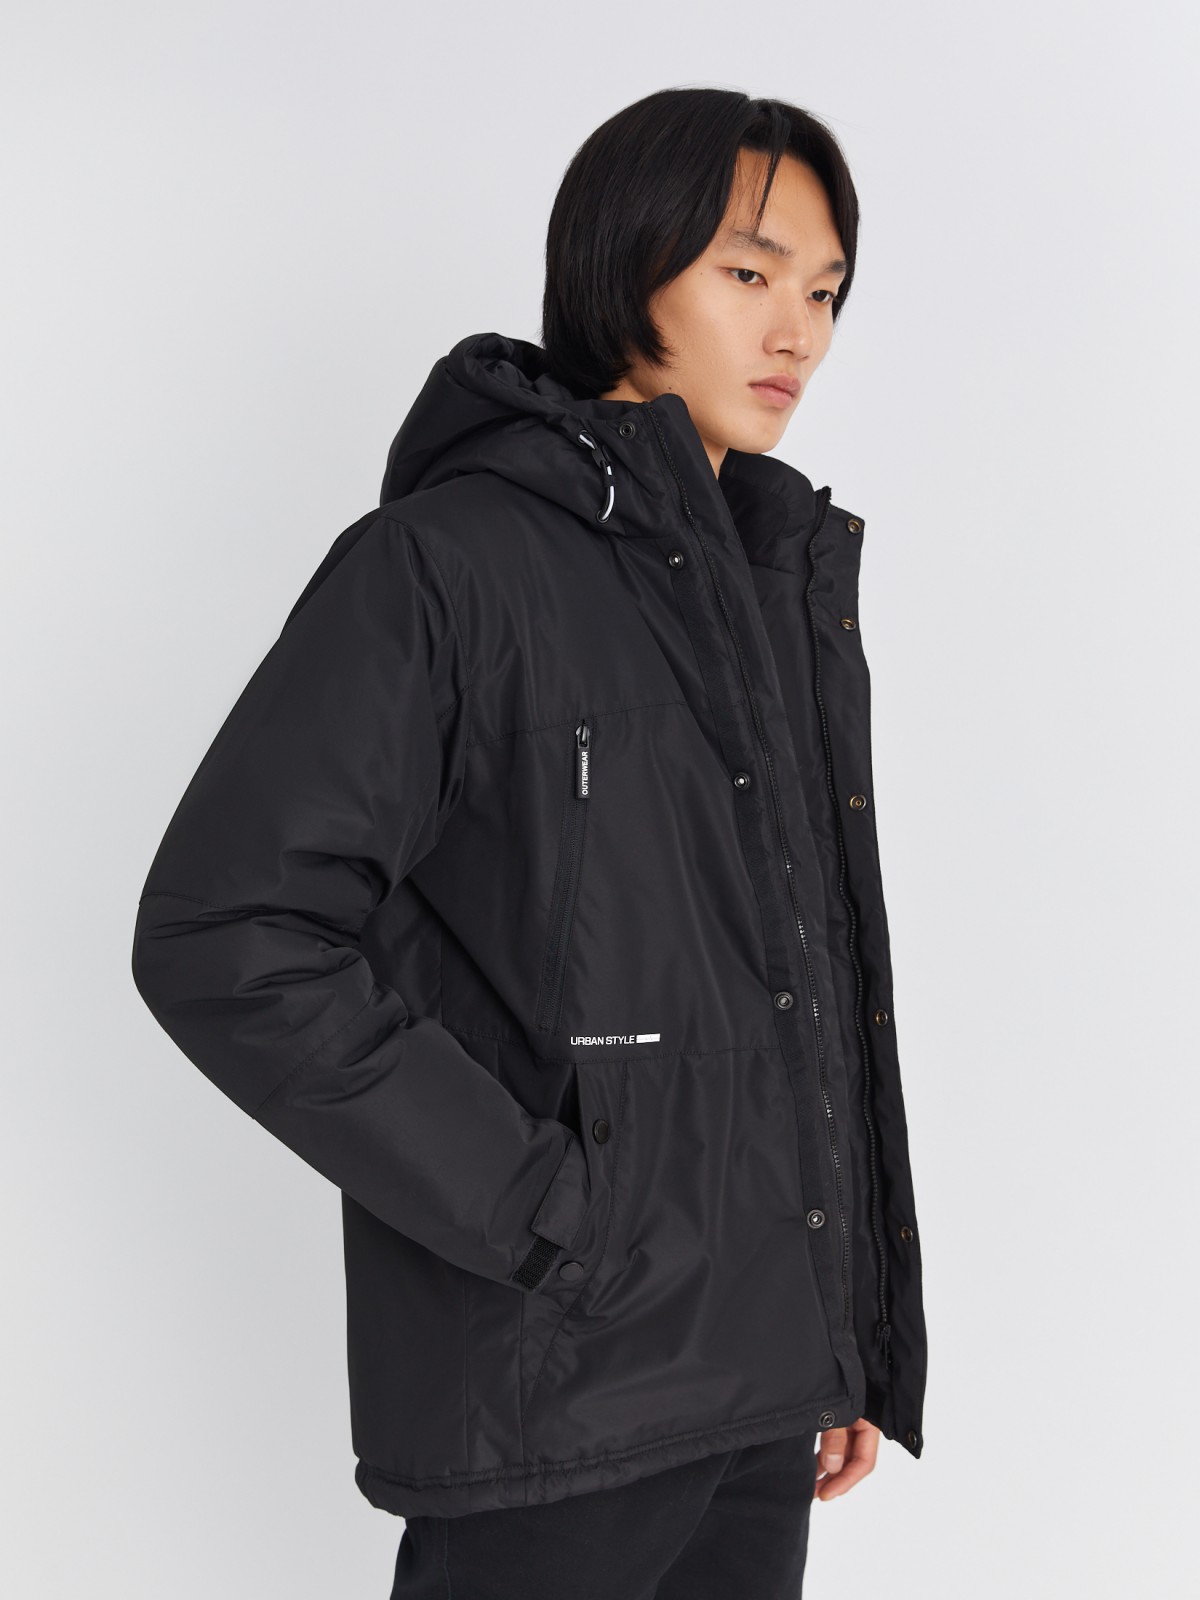 Тёплая куртка удлинённого силуэта с капюшоном на синтепоне zolla 013345102064, цвет черный, размер M - фото 1